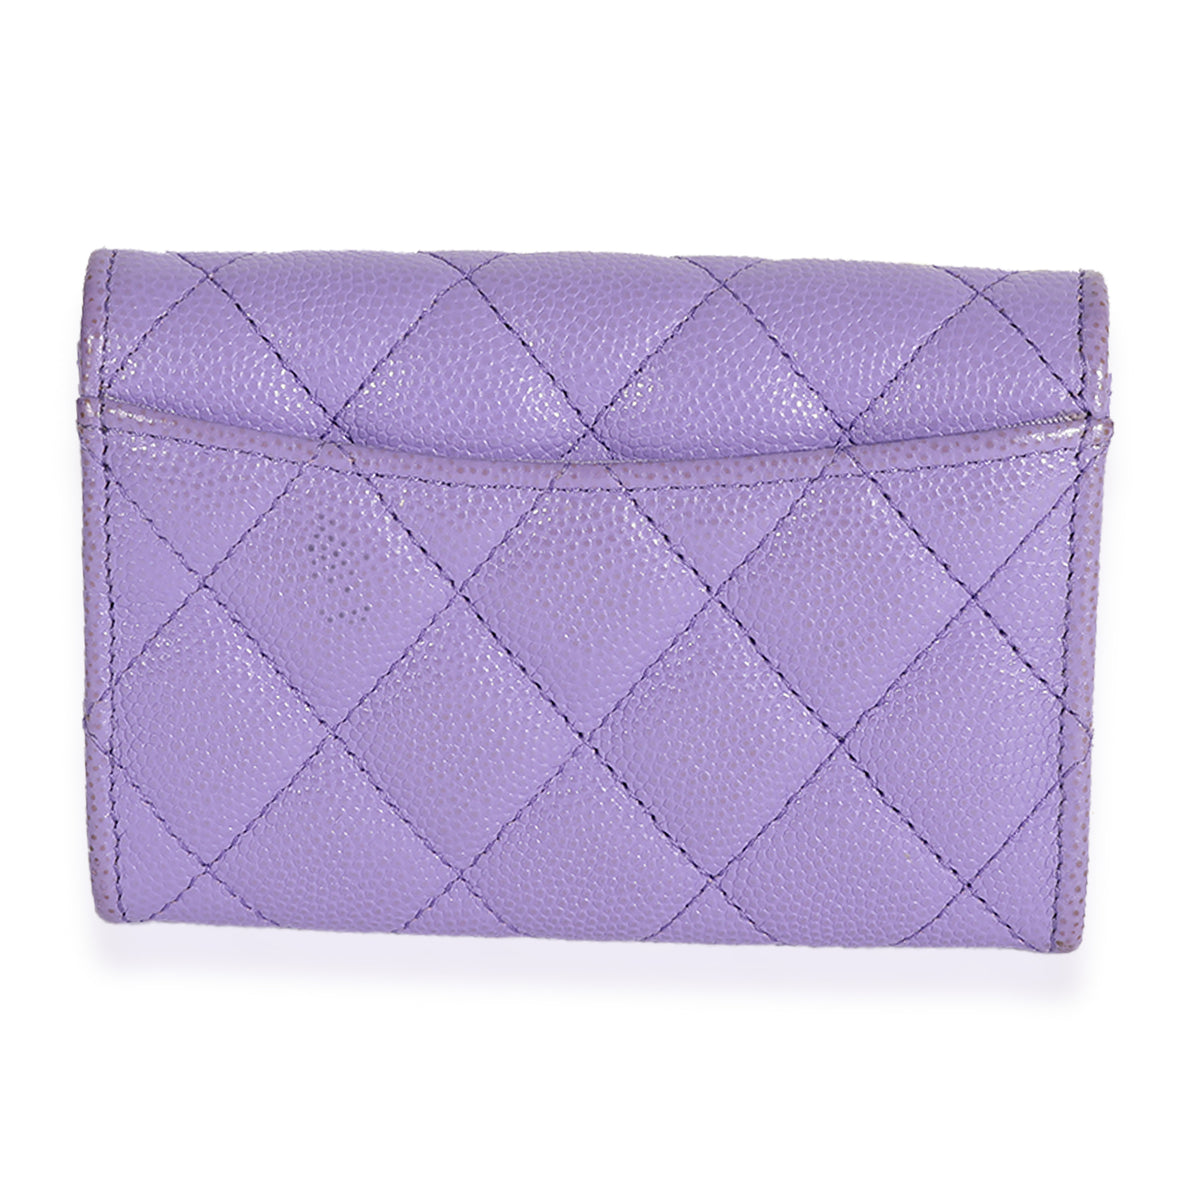 Chanel Purple Quilted Caviar Easy Flap Bag, myGemma, AU